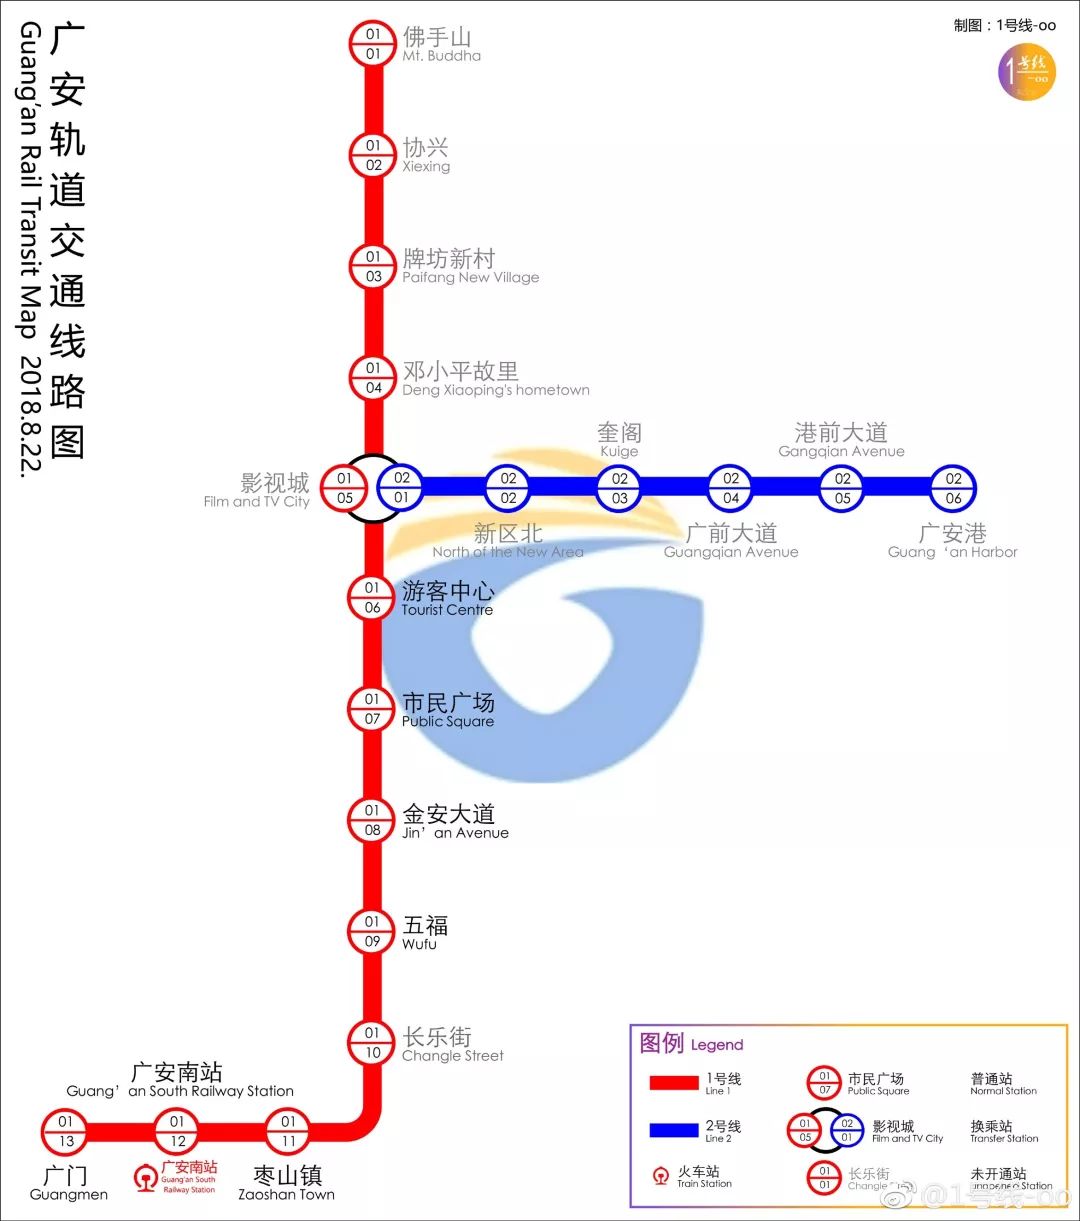 终于要通了!广安云轨计划于8月22日试运行!